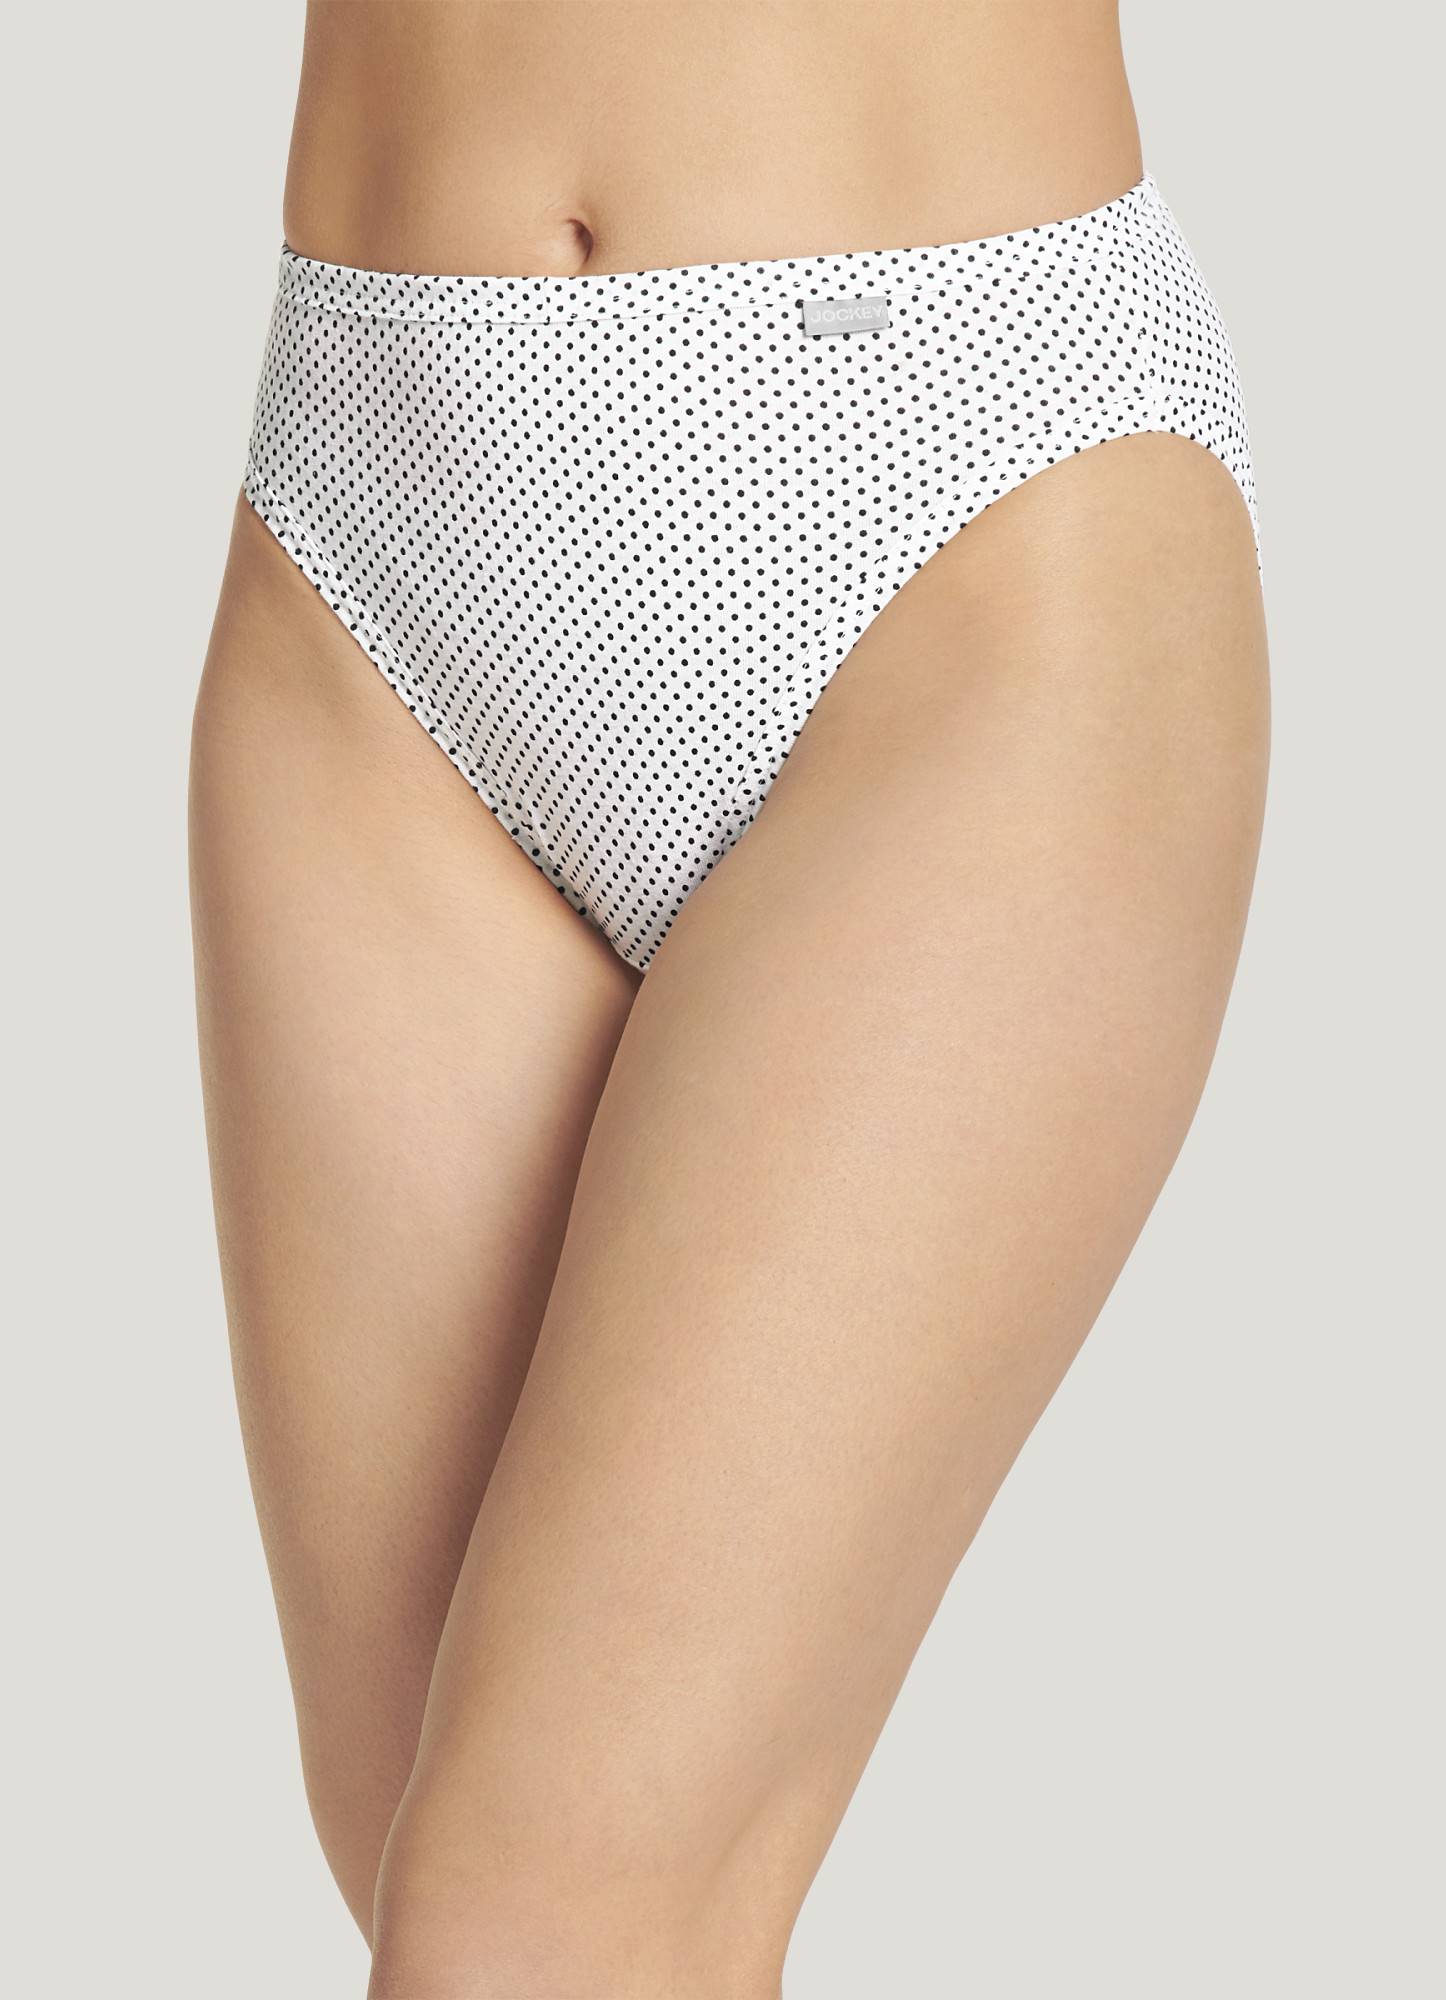 Jockey Women's Underwear Plus Size Elance French Cut - 6 Pack, - Import It  All